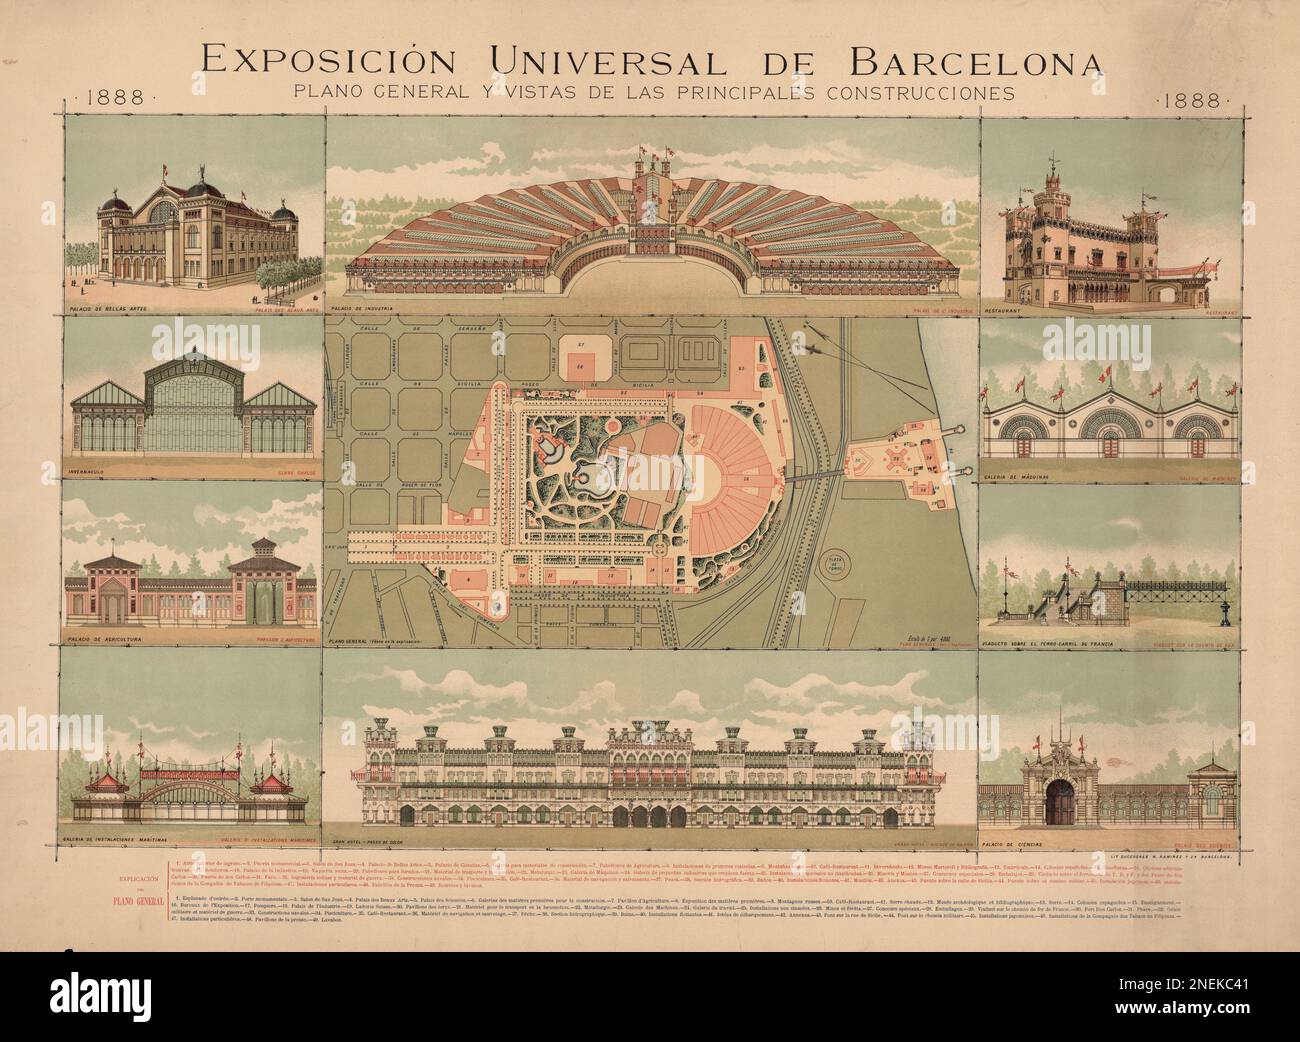 Pianta generale e viste principali degli edifici della Mostra universale di Barcellona, 1888. Foto Stock